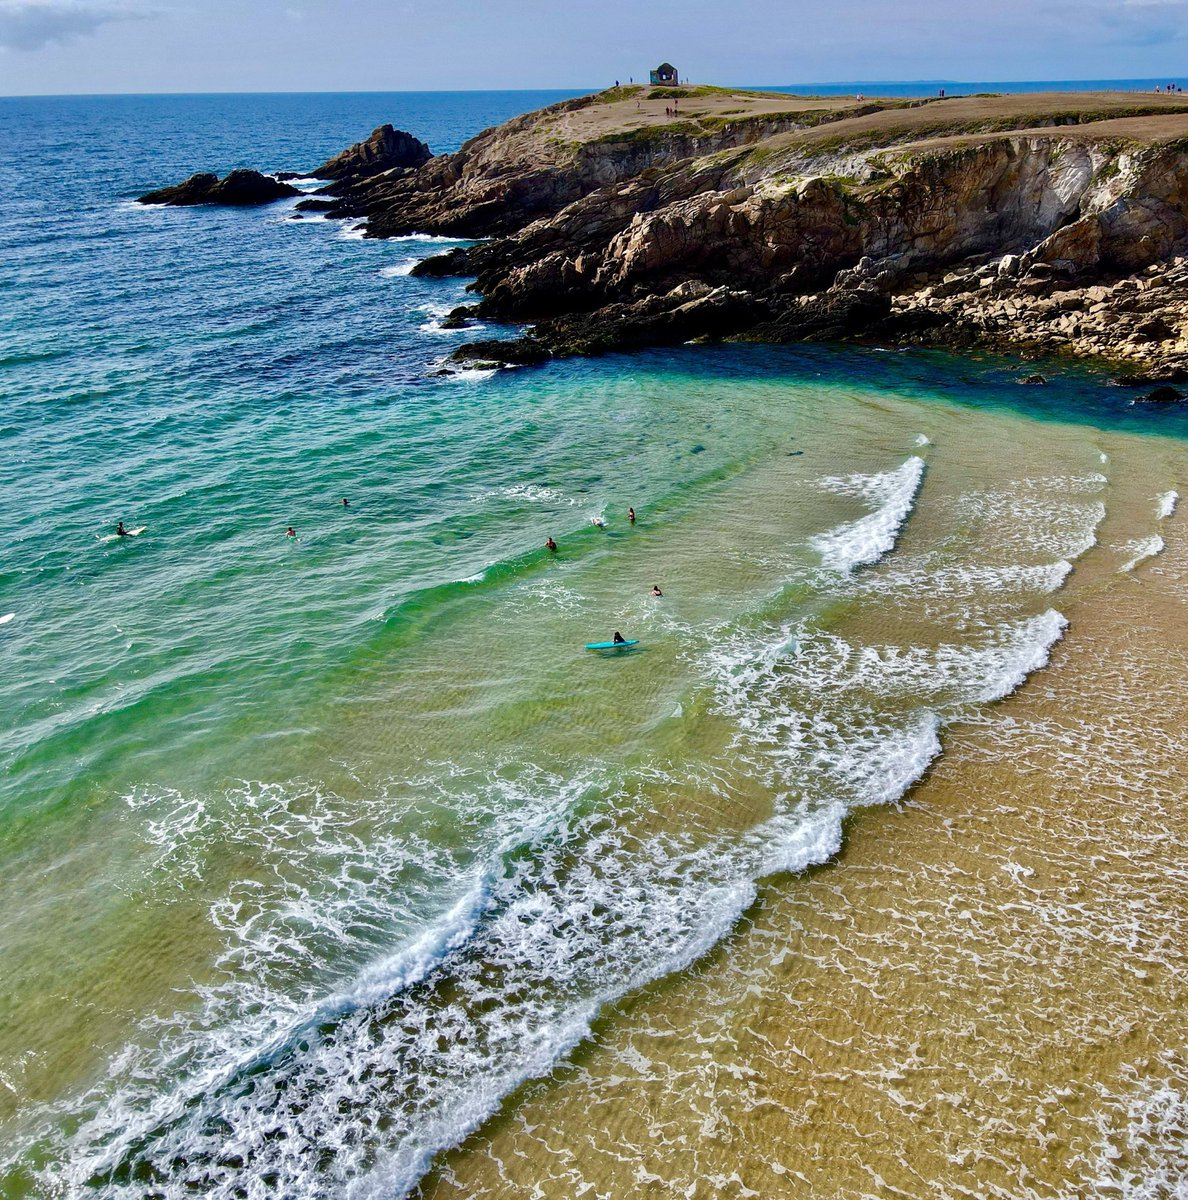 La baie de Quiberon & sa cote sauvage !!!
Réputé pour ses spots de surf 🏄‍♂️🌊🏄‍♀️

#Quiberon 
#Bretagne 
#MagnifiqueBretagne 
#labellebretagne
 #MagnifiqueFrance 
#bzh 
#vueduciel 
#dronephotography 
#drone
#wave 
#photograghy